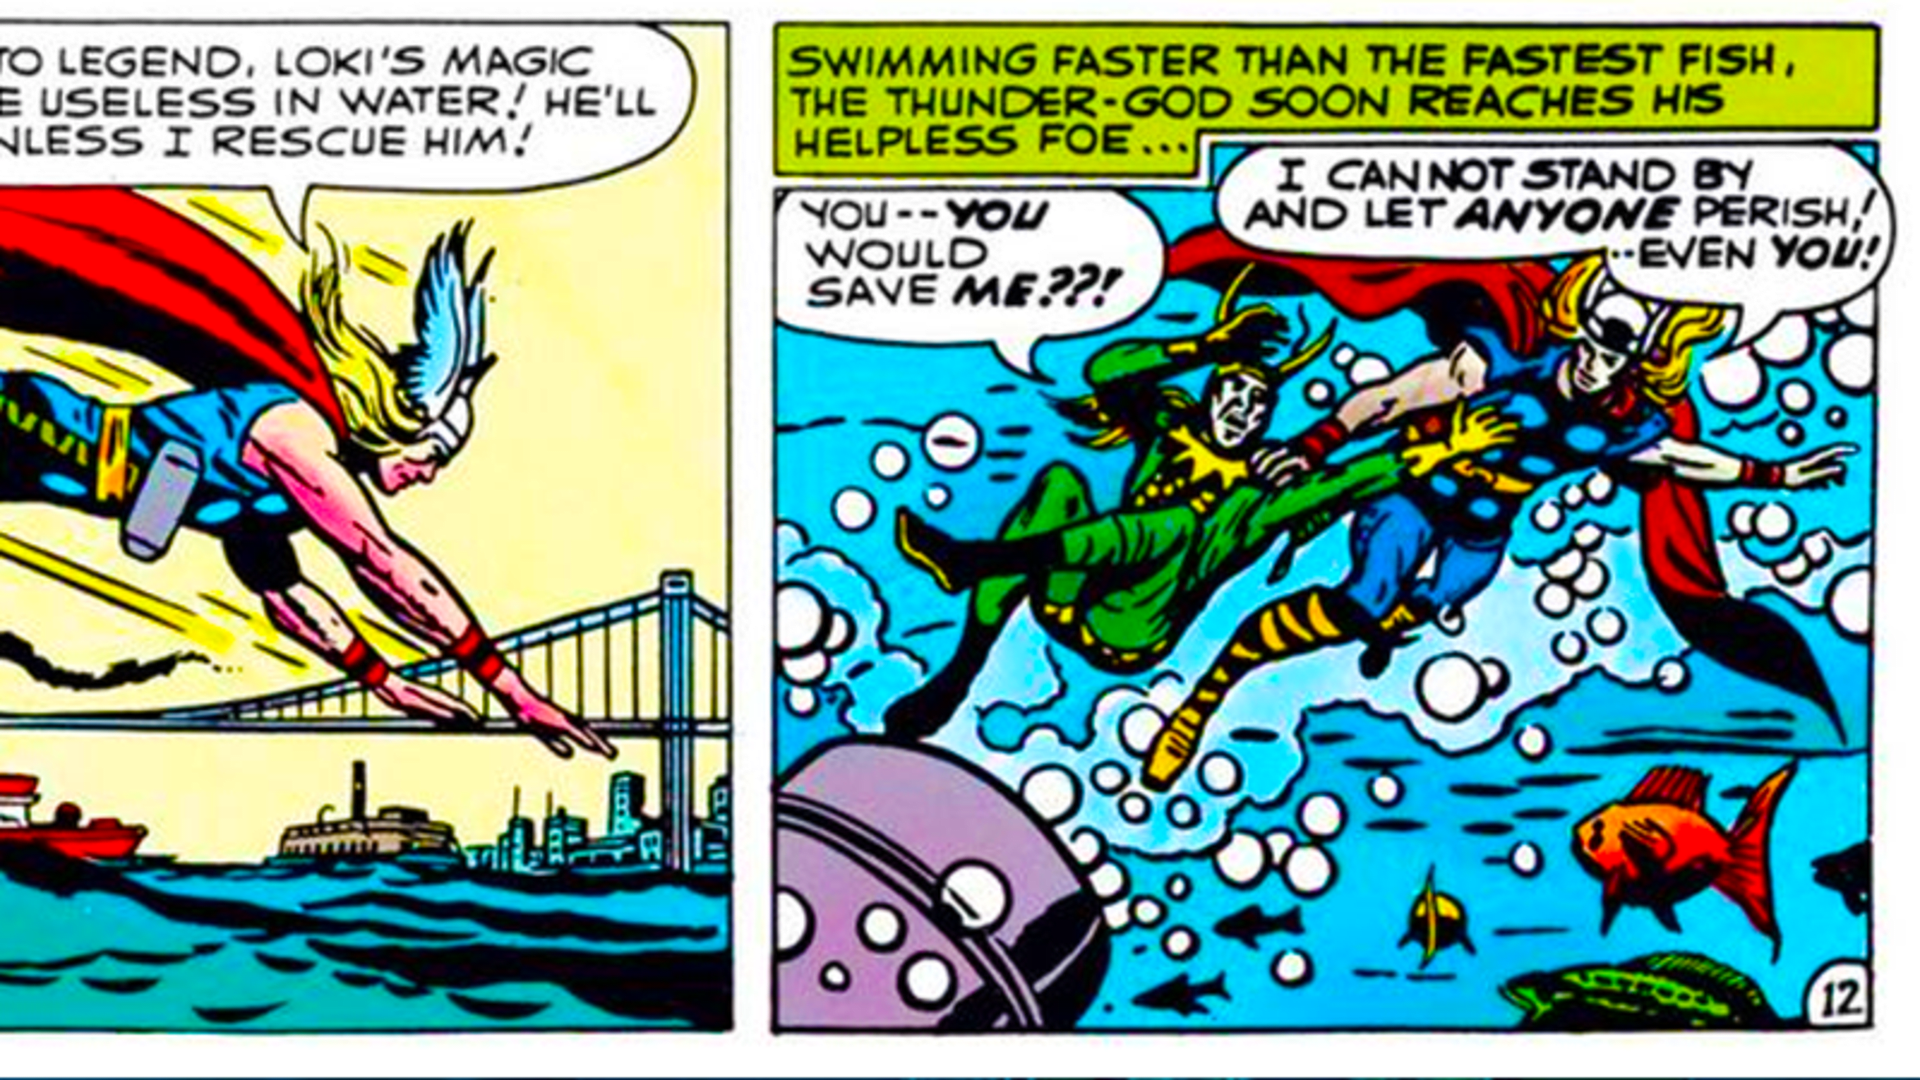 Loki vs. voda